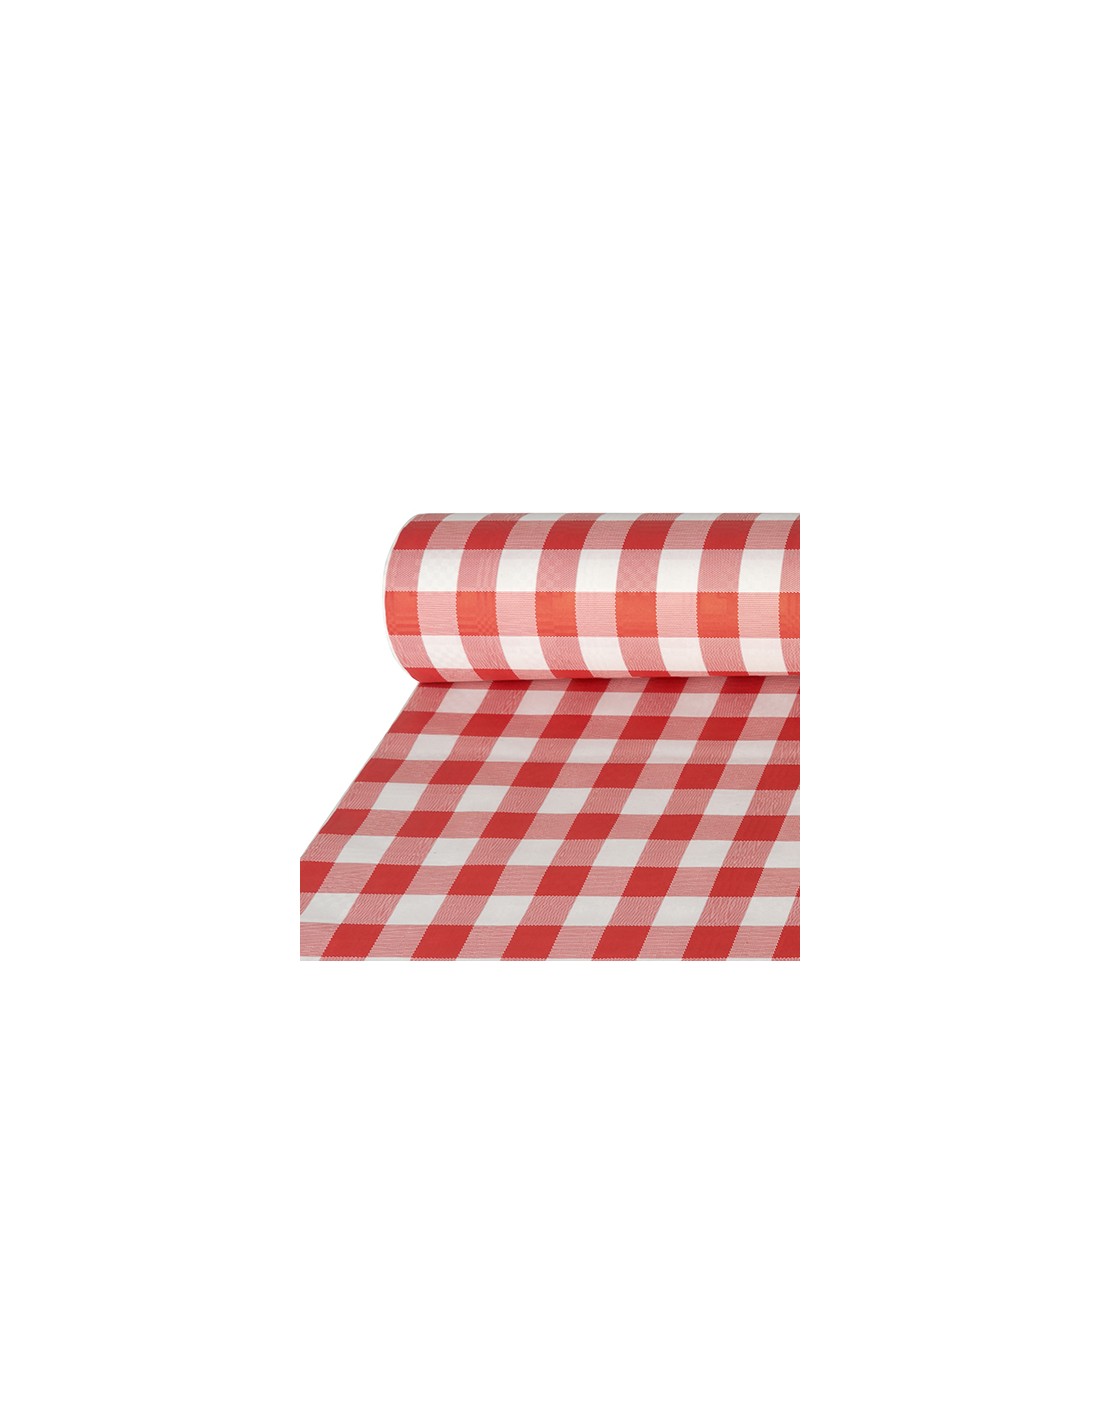 Mantel de papel cuadros vichy rojo blanco gofrado damasco